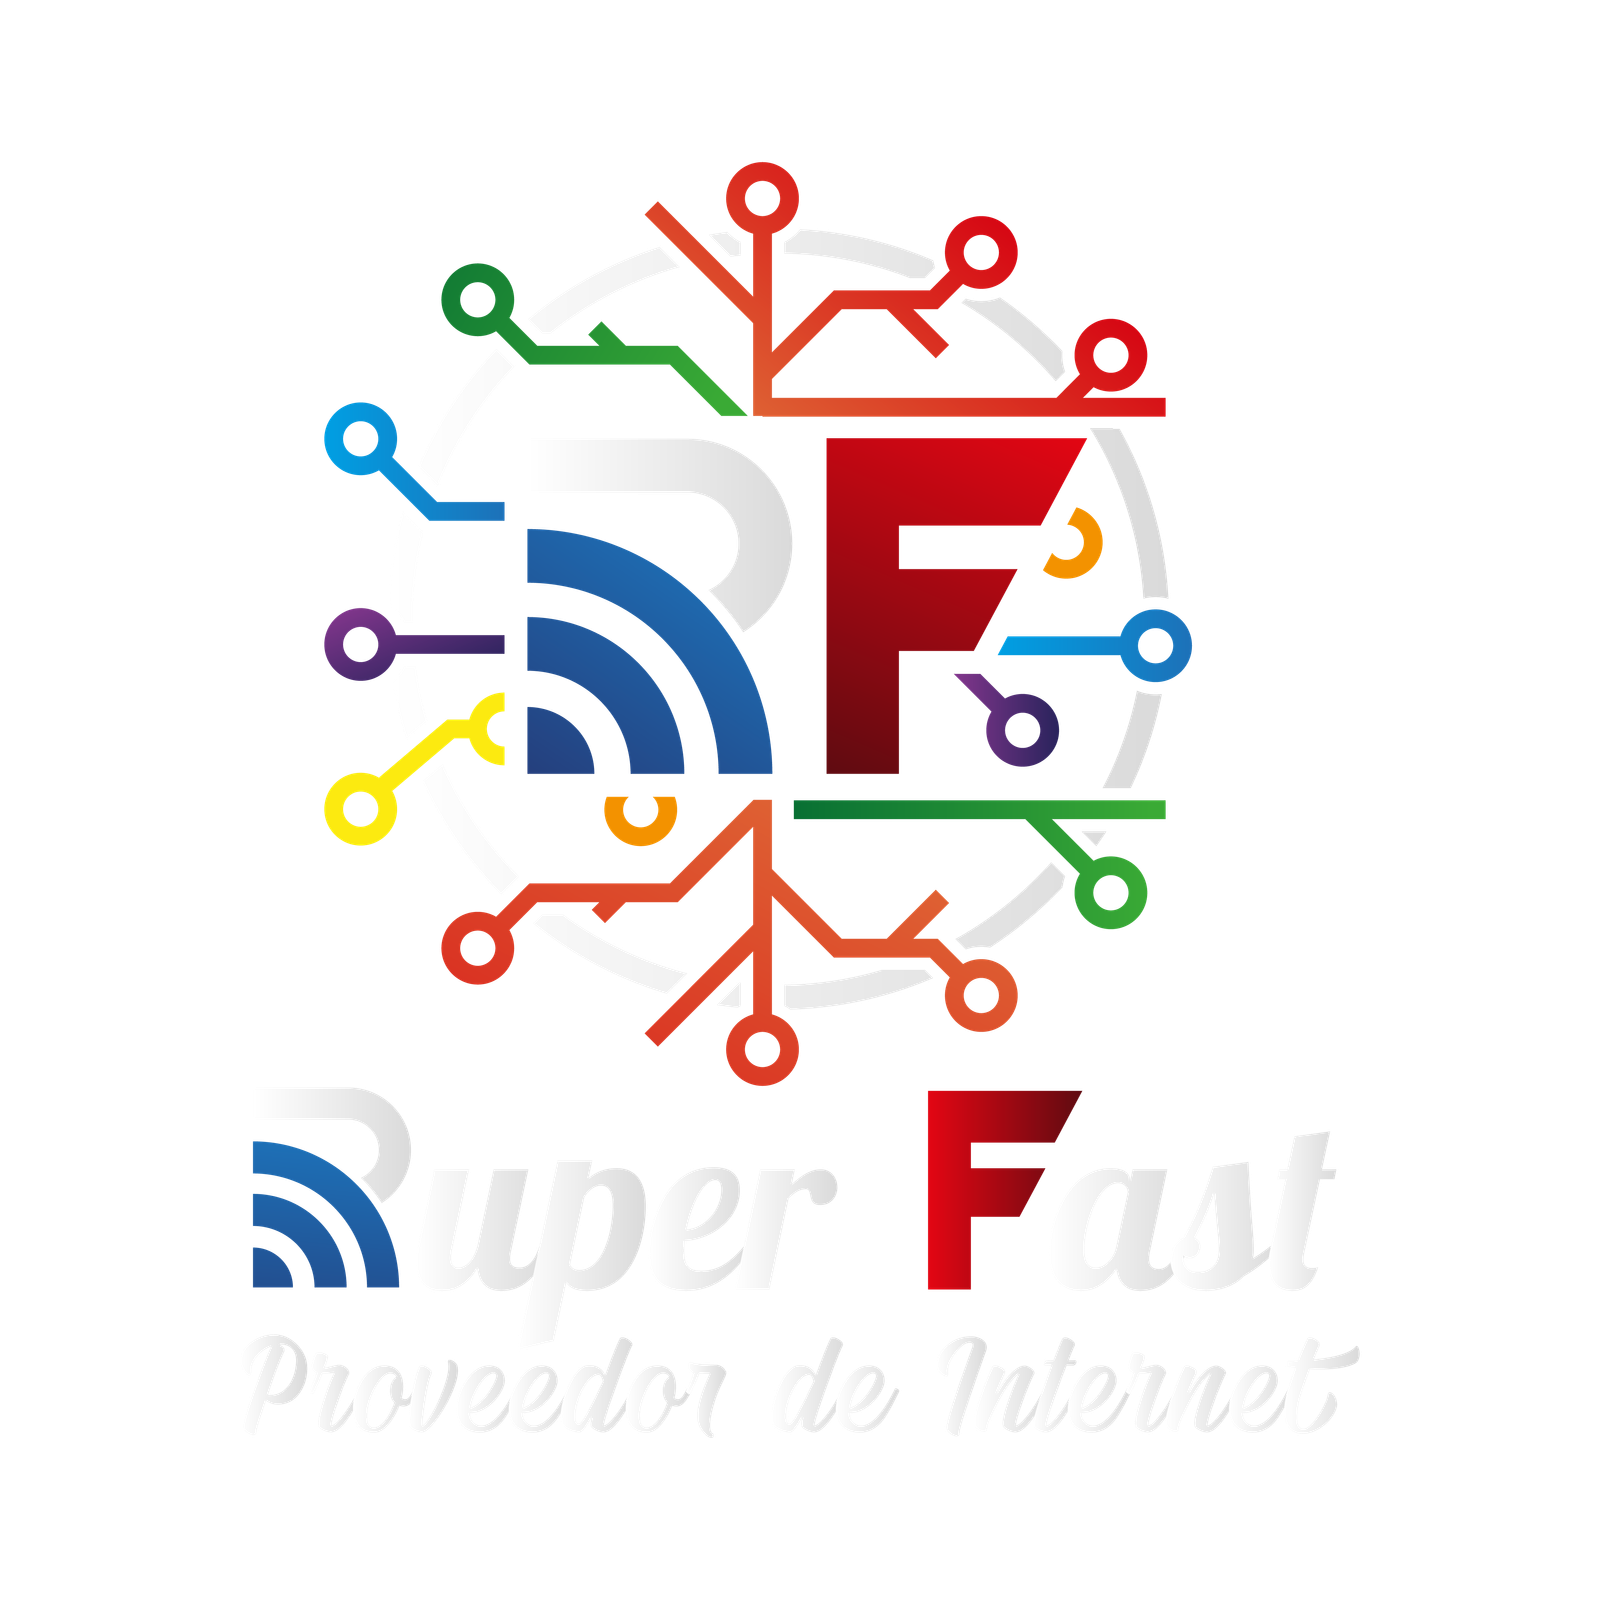 ruper fast logo